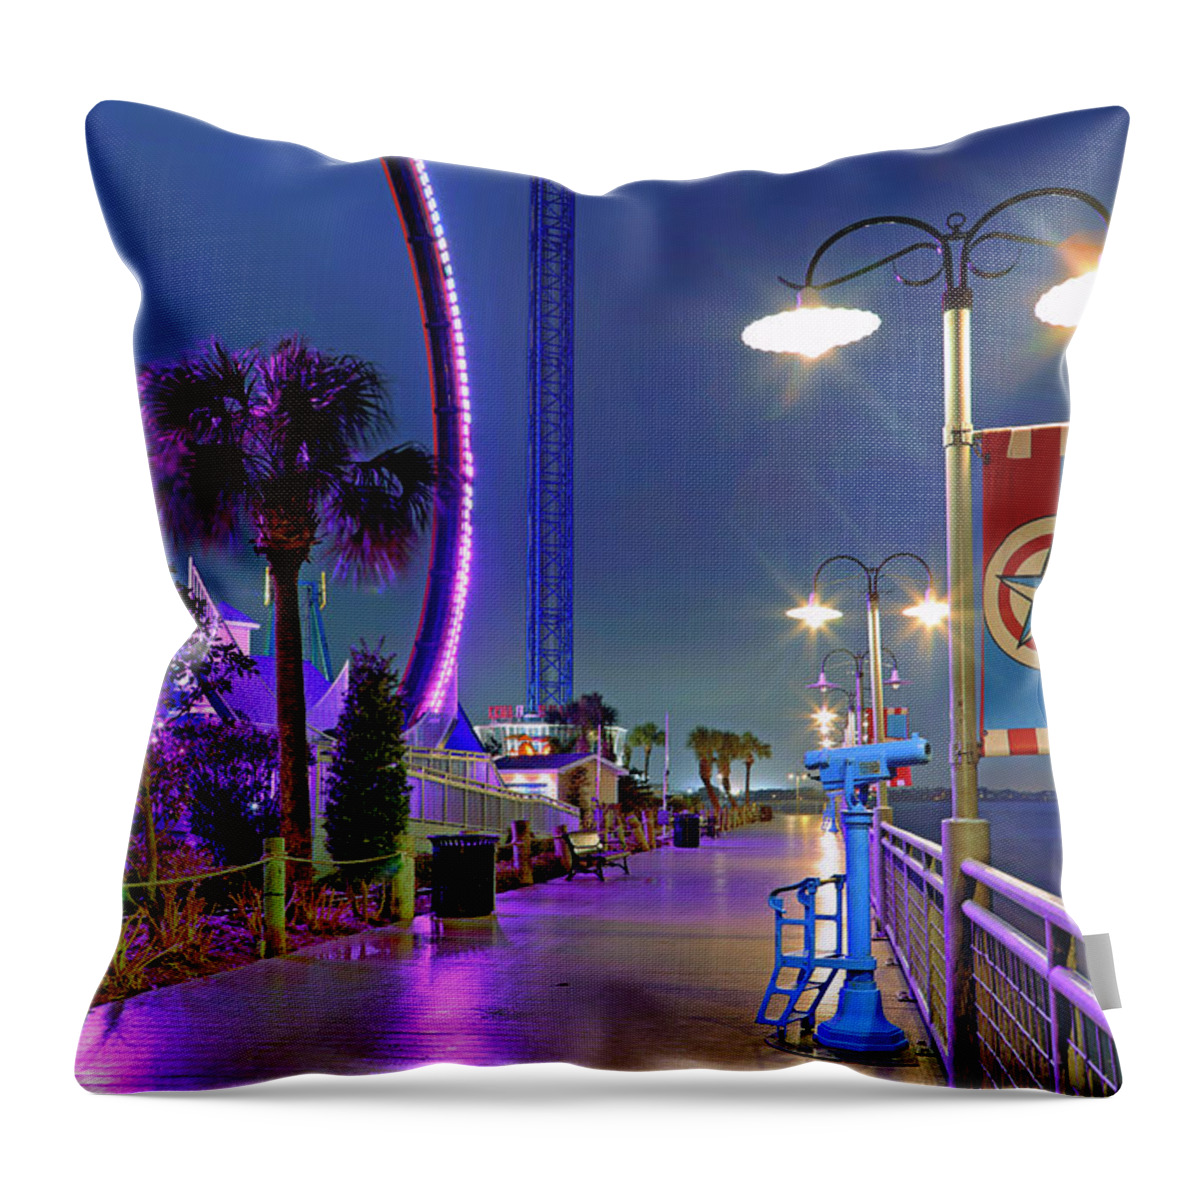 Kemah Boardwalk Throw Pillow featuring the photograph Kemah Boardwalk - Amusement Park - Texas by Jason Politte